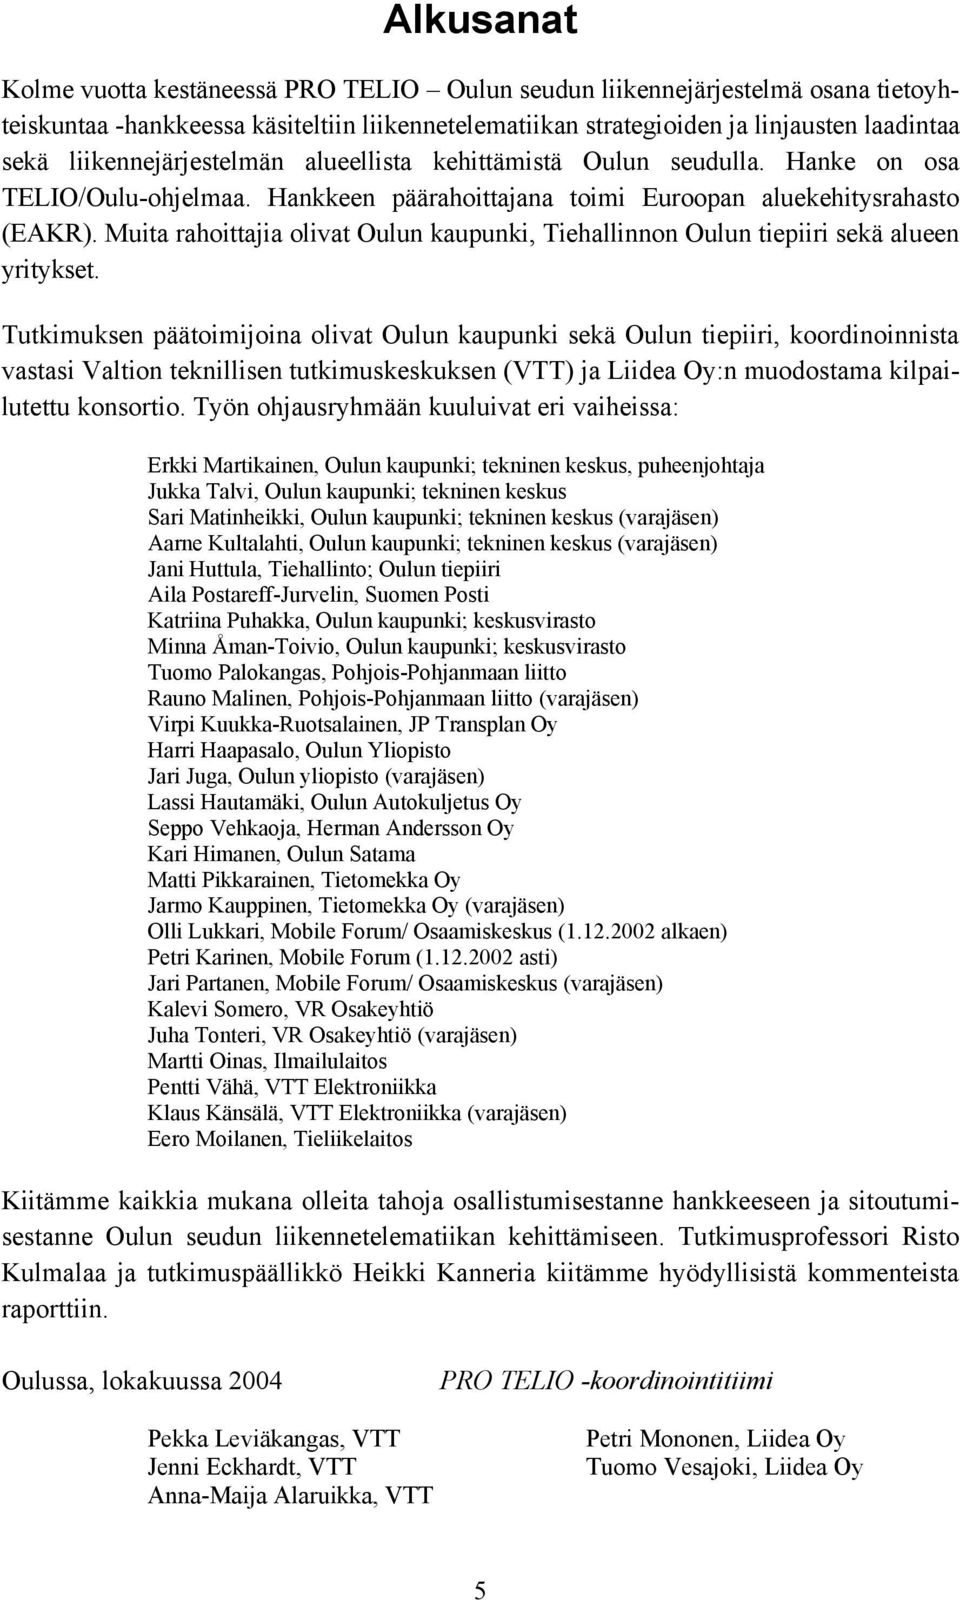 Muita rahoittajia olivat Oulun kaupunki, Tiehallinnon Oulun tiepiiri sekä alueen yritykset.